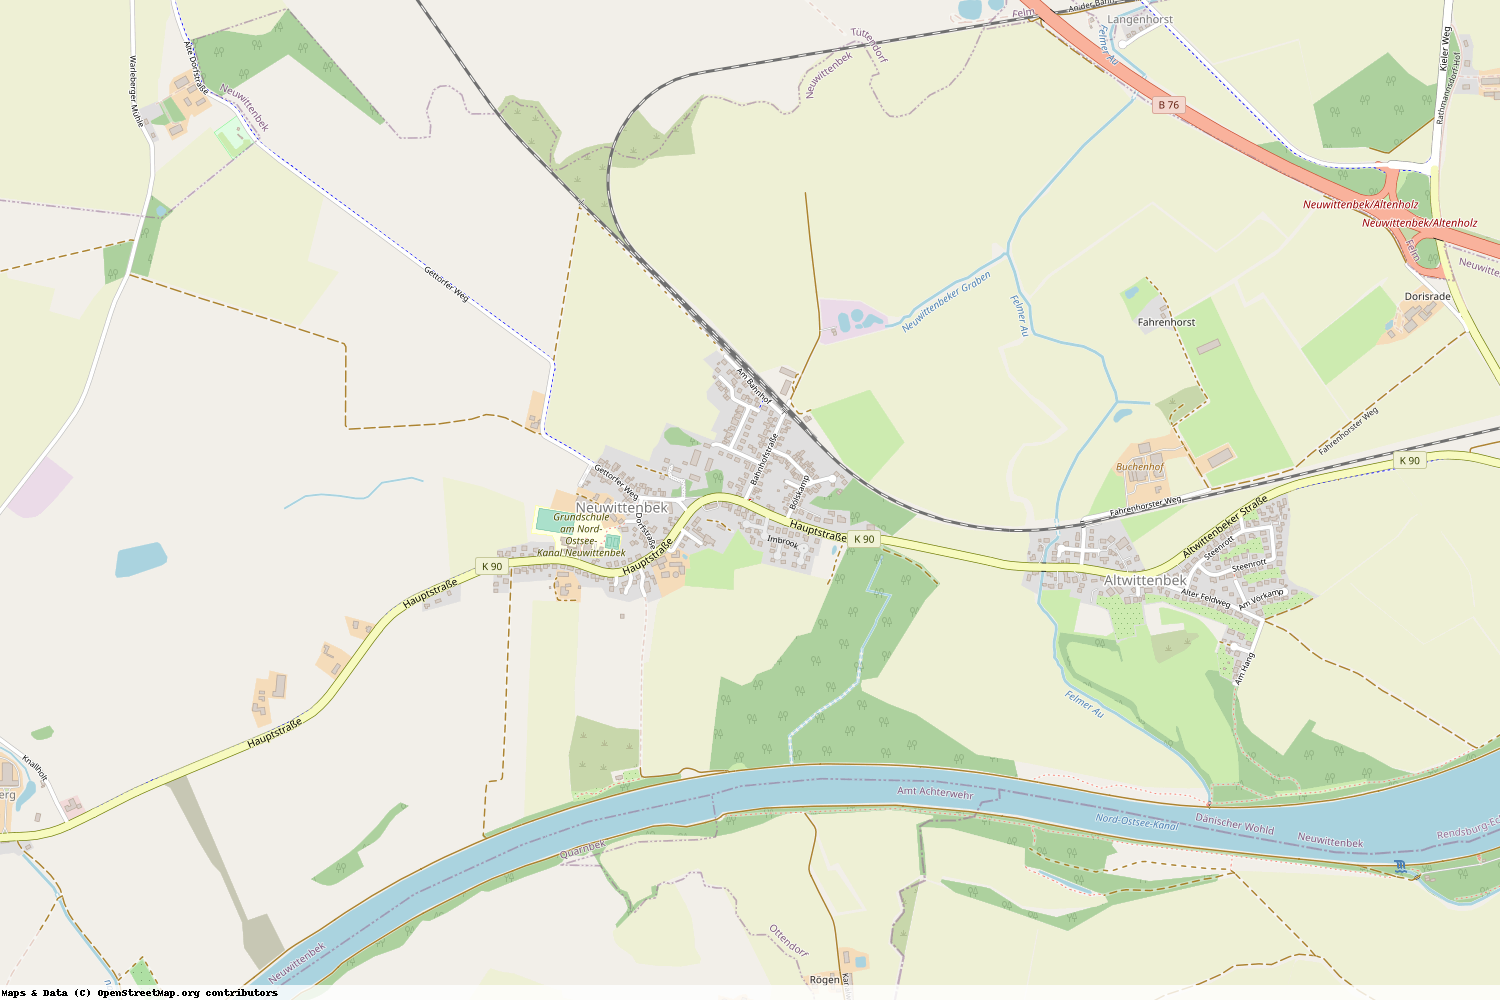 Ist gerade Stromausfall in Schleswig-Holstein - Rendsburg-Eckernförde - Neuwittenbek?